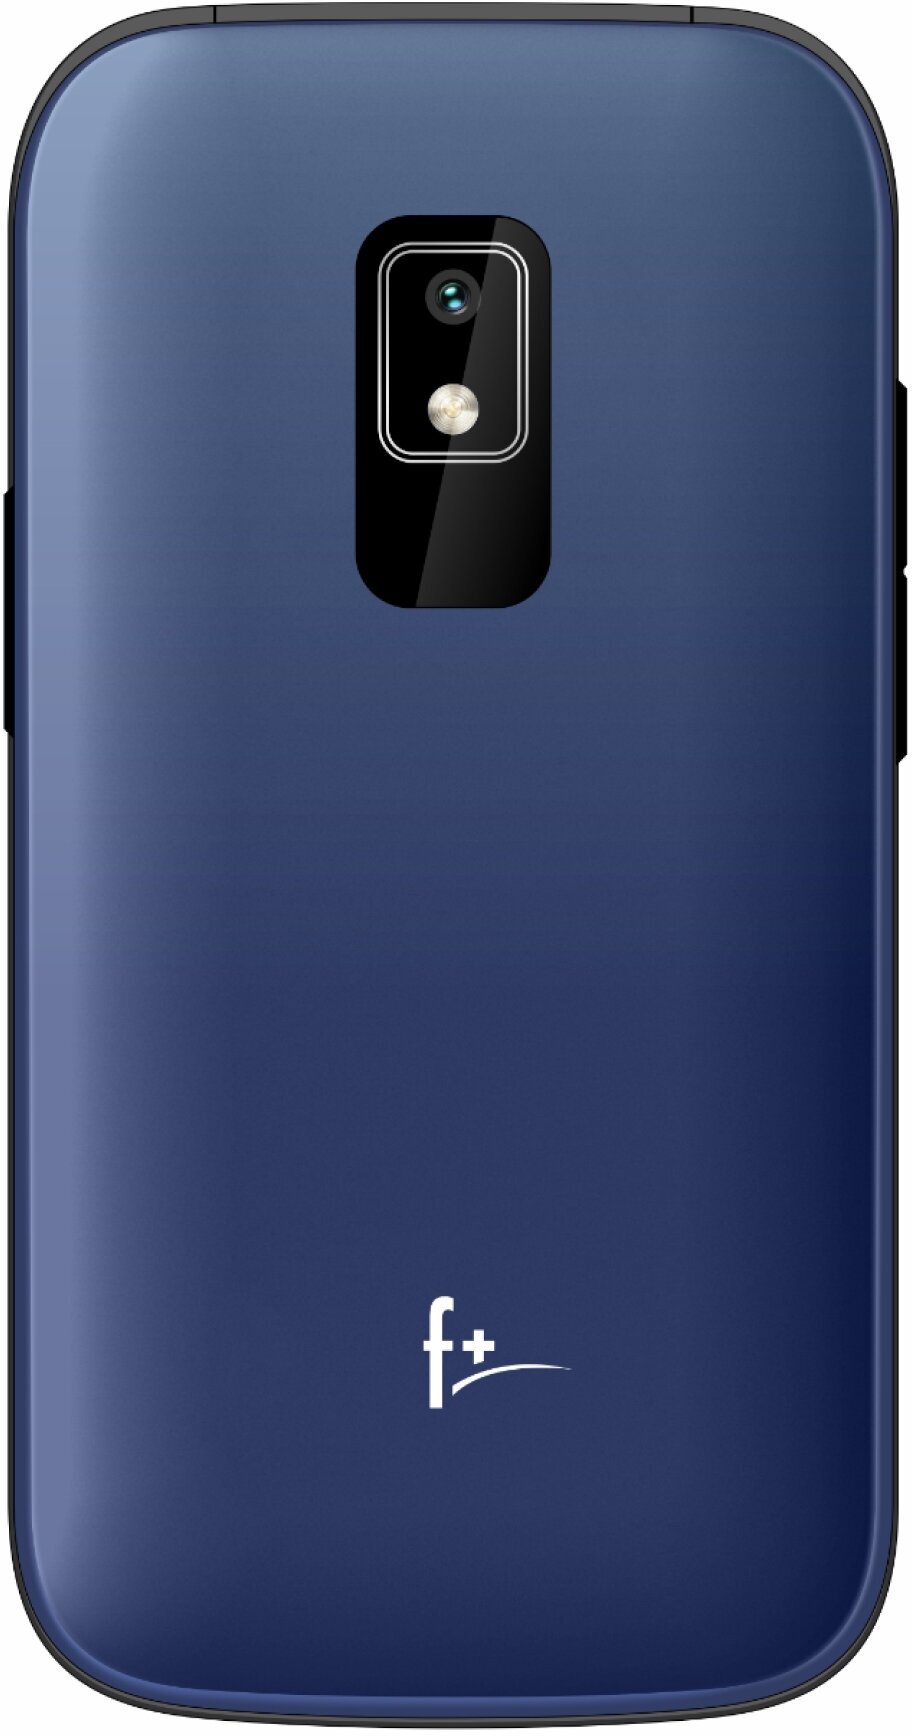 Мобильный телефон Fly Flip 280, 2.8 320x240 TFT, BT, 1xCam, 2-Sim, 1000 мА·ч, micro-USB, синий (Flip 280 Blue)